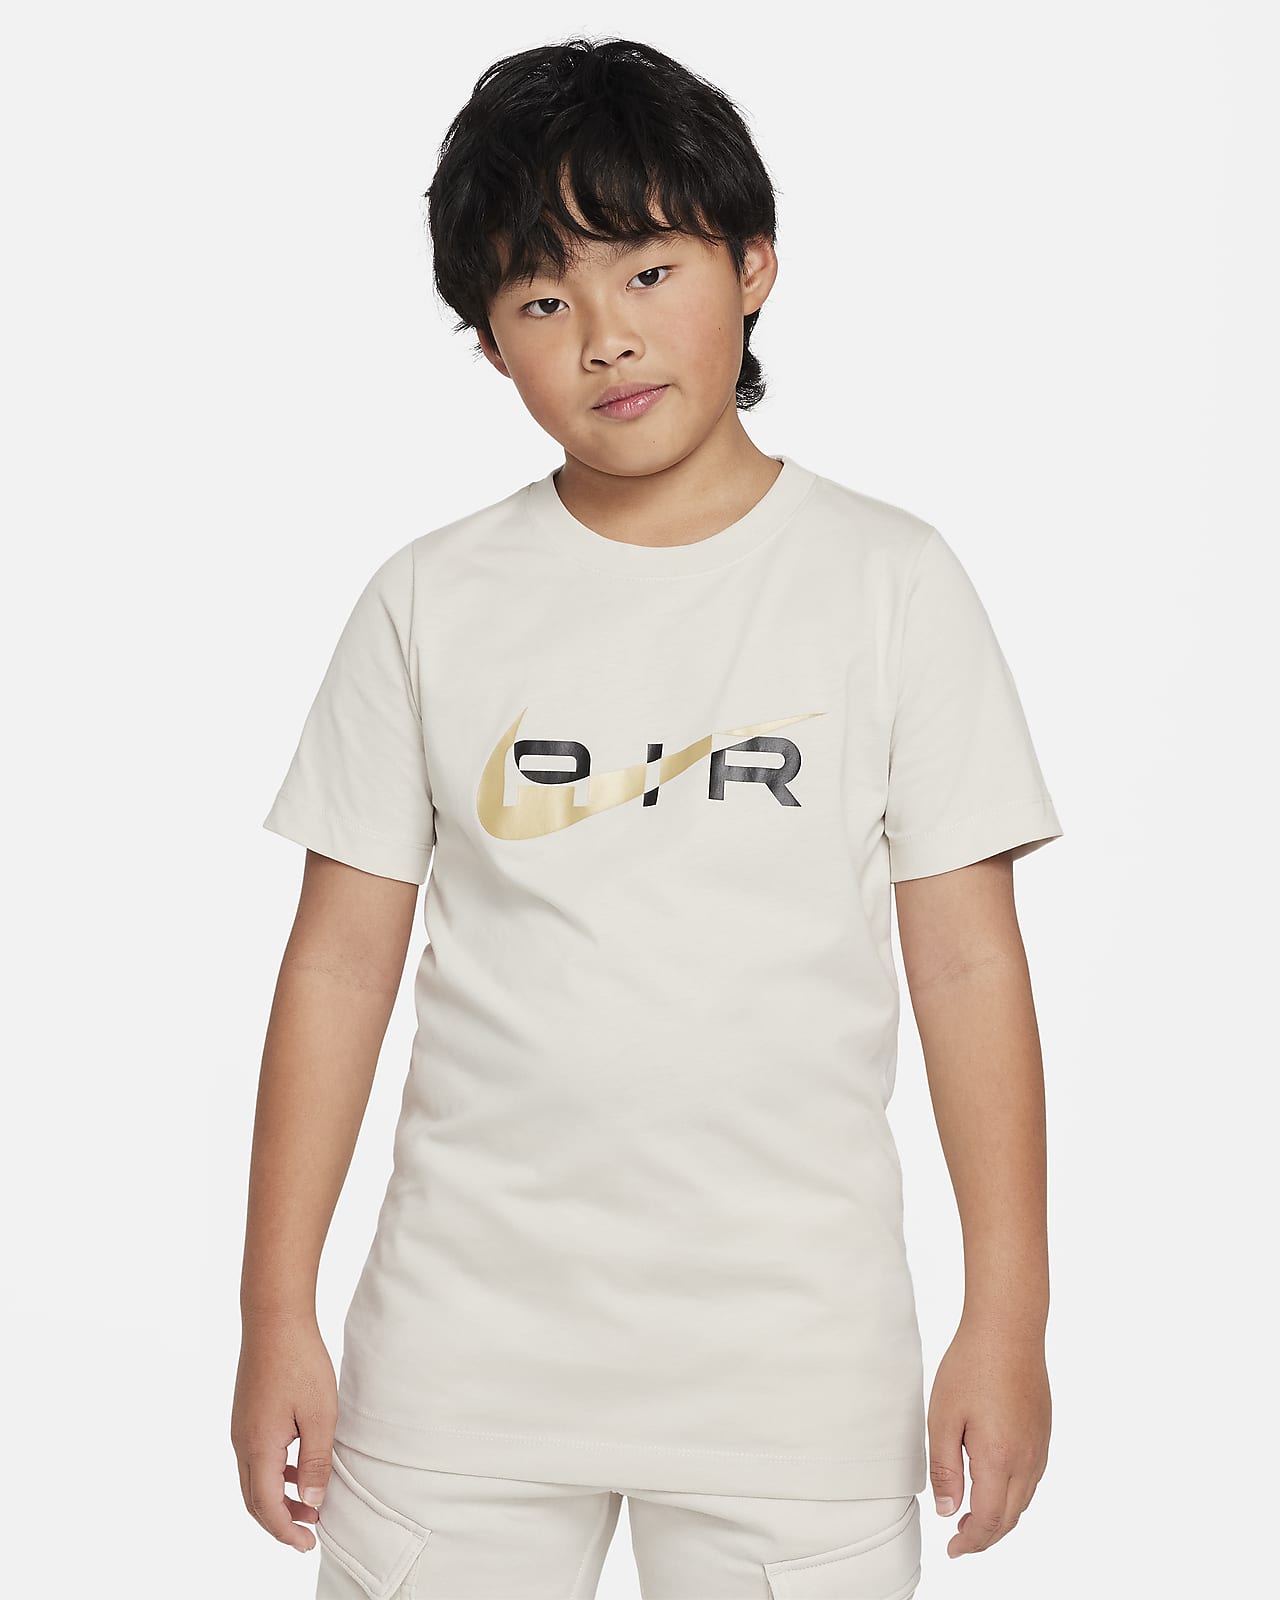 Nike Air póló nagyobb gyerekeknek (fiúk)